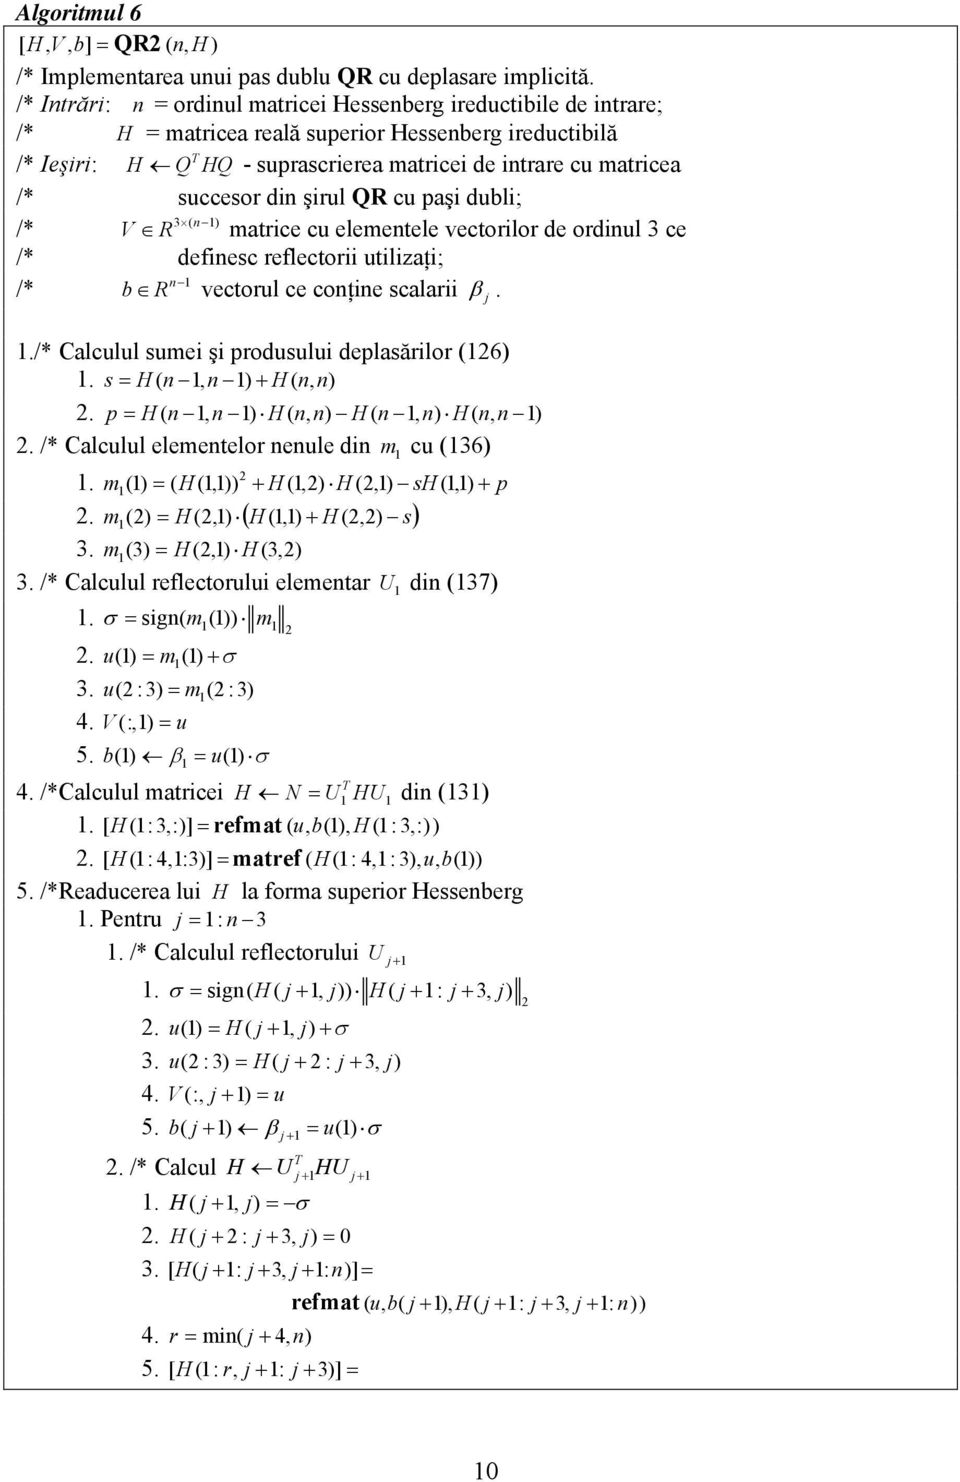 paşi dubli; /* 3 ( ) V matrice cu elemetele vectorilor de ordiul 3 ce /* defiesc reflectorii utilizaţi; /* b vectorul ce coţie scalarii β../* Calculul sumei şi produsului deplasărilor (6).